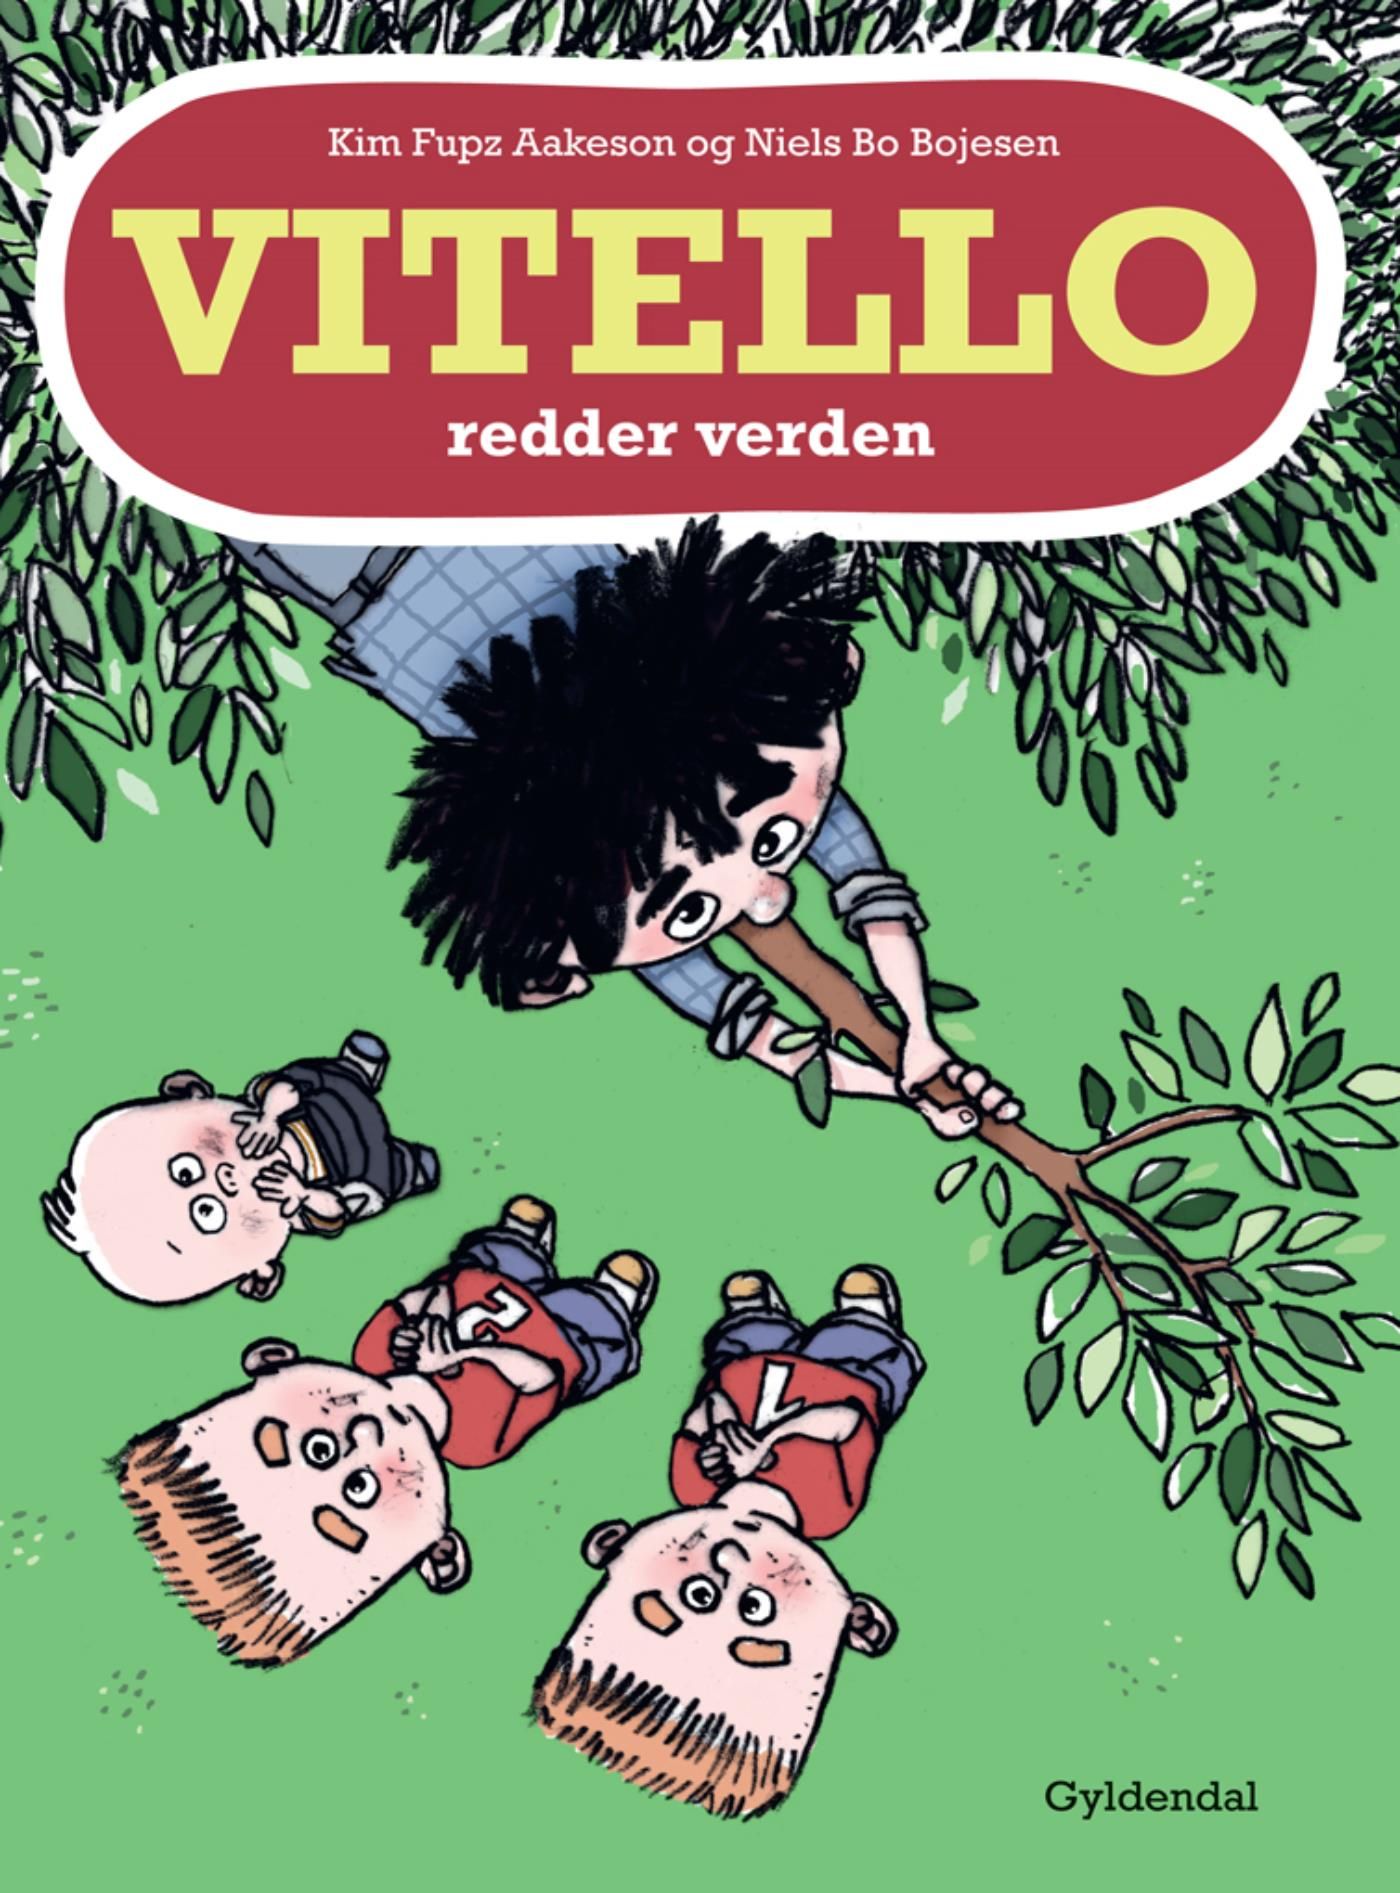 Vitello redder verden Lyt&læs, eBook by Niels Bo Bojesen, Kim Fupz Aakeson